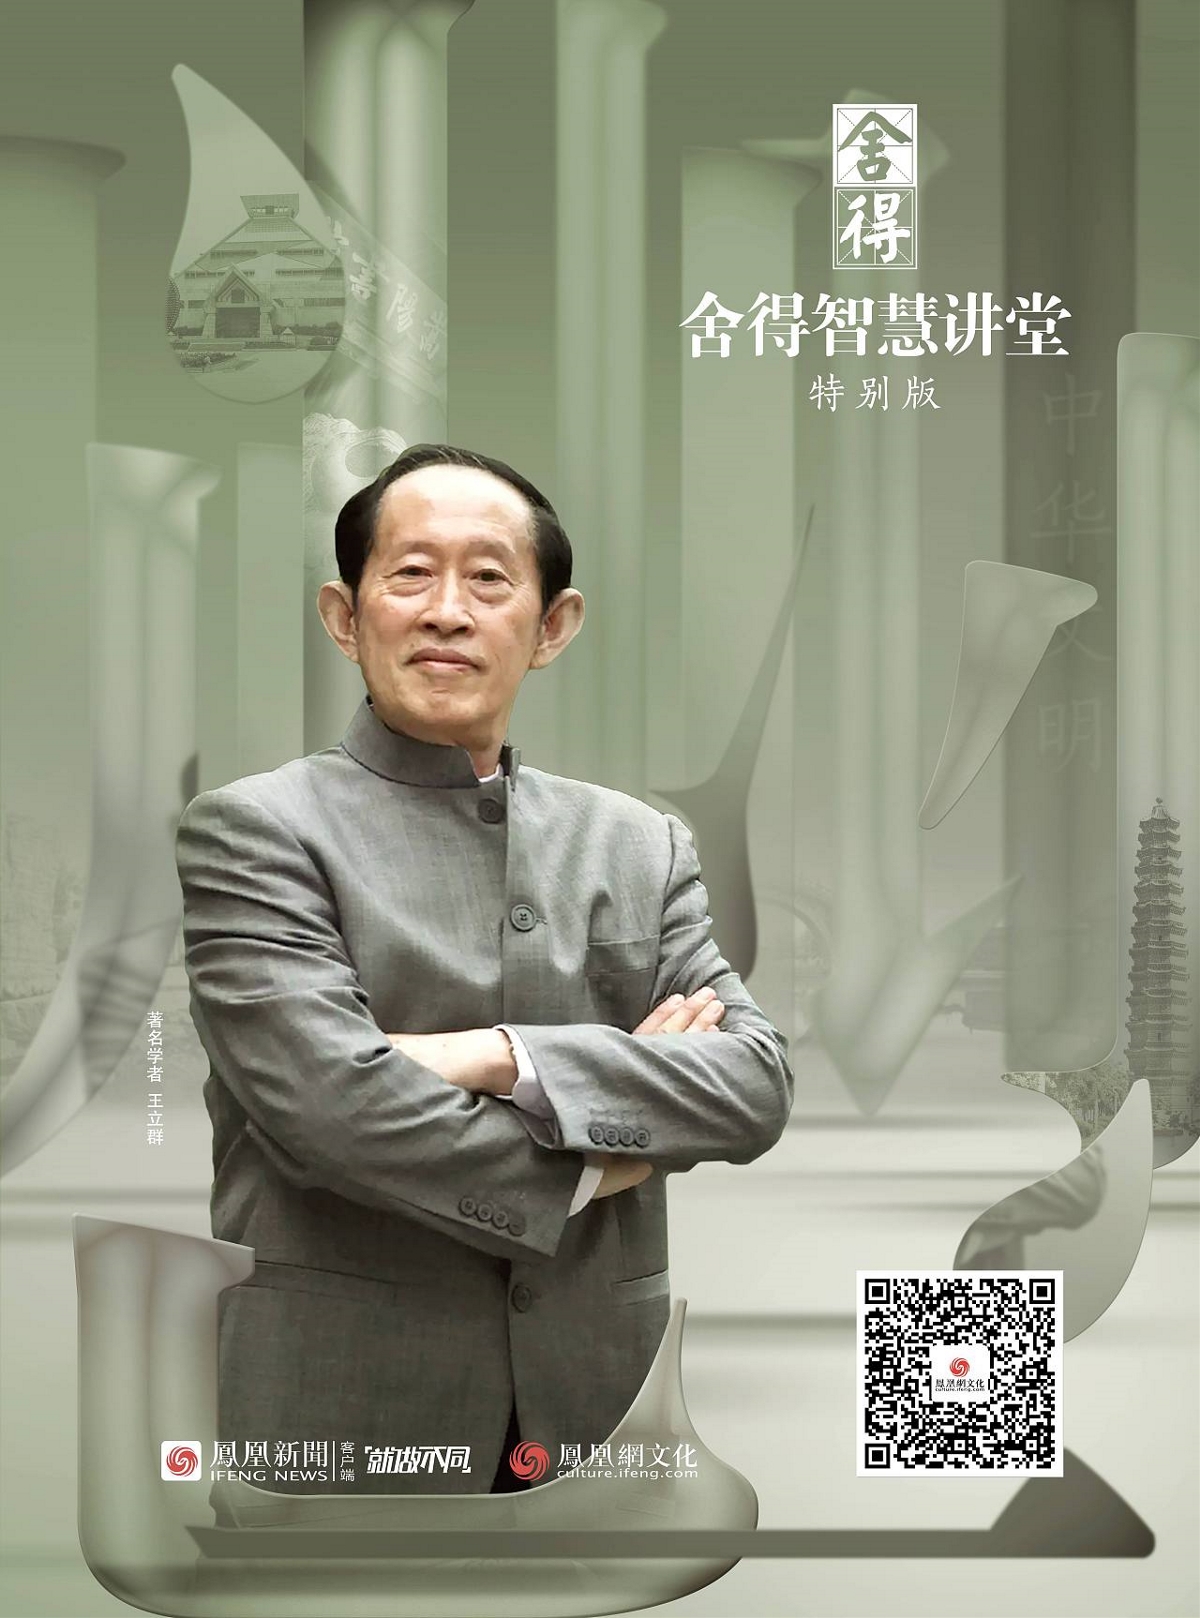 凤凰网《舍得智慧讲堂》海报设计@北京橙乐视觉设计